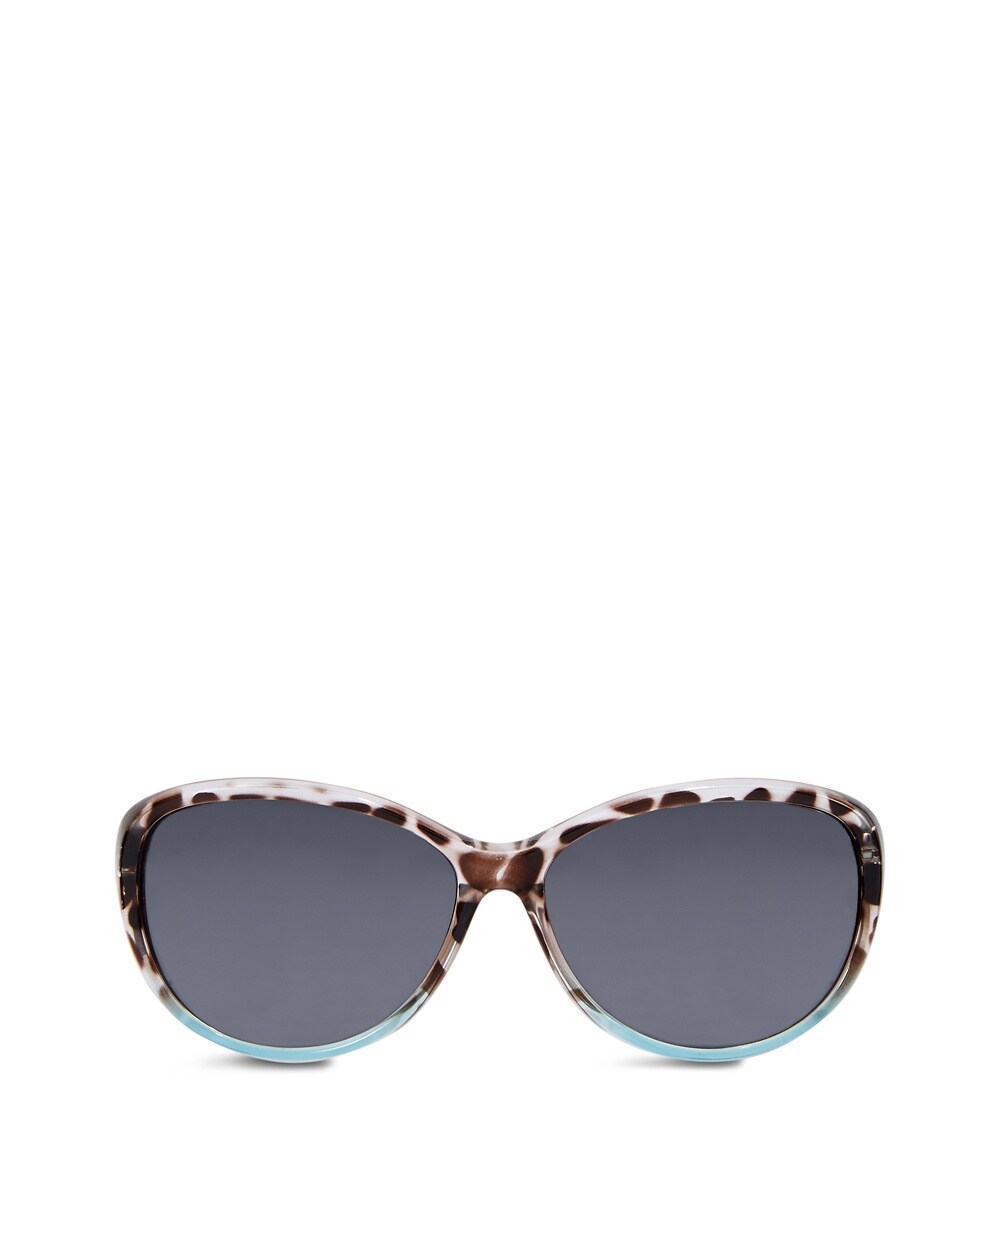 Lorna Leopard Spot Sunglasses